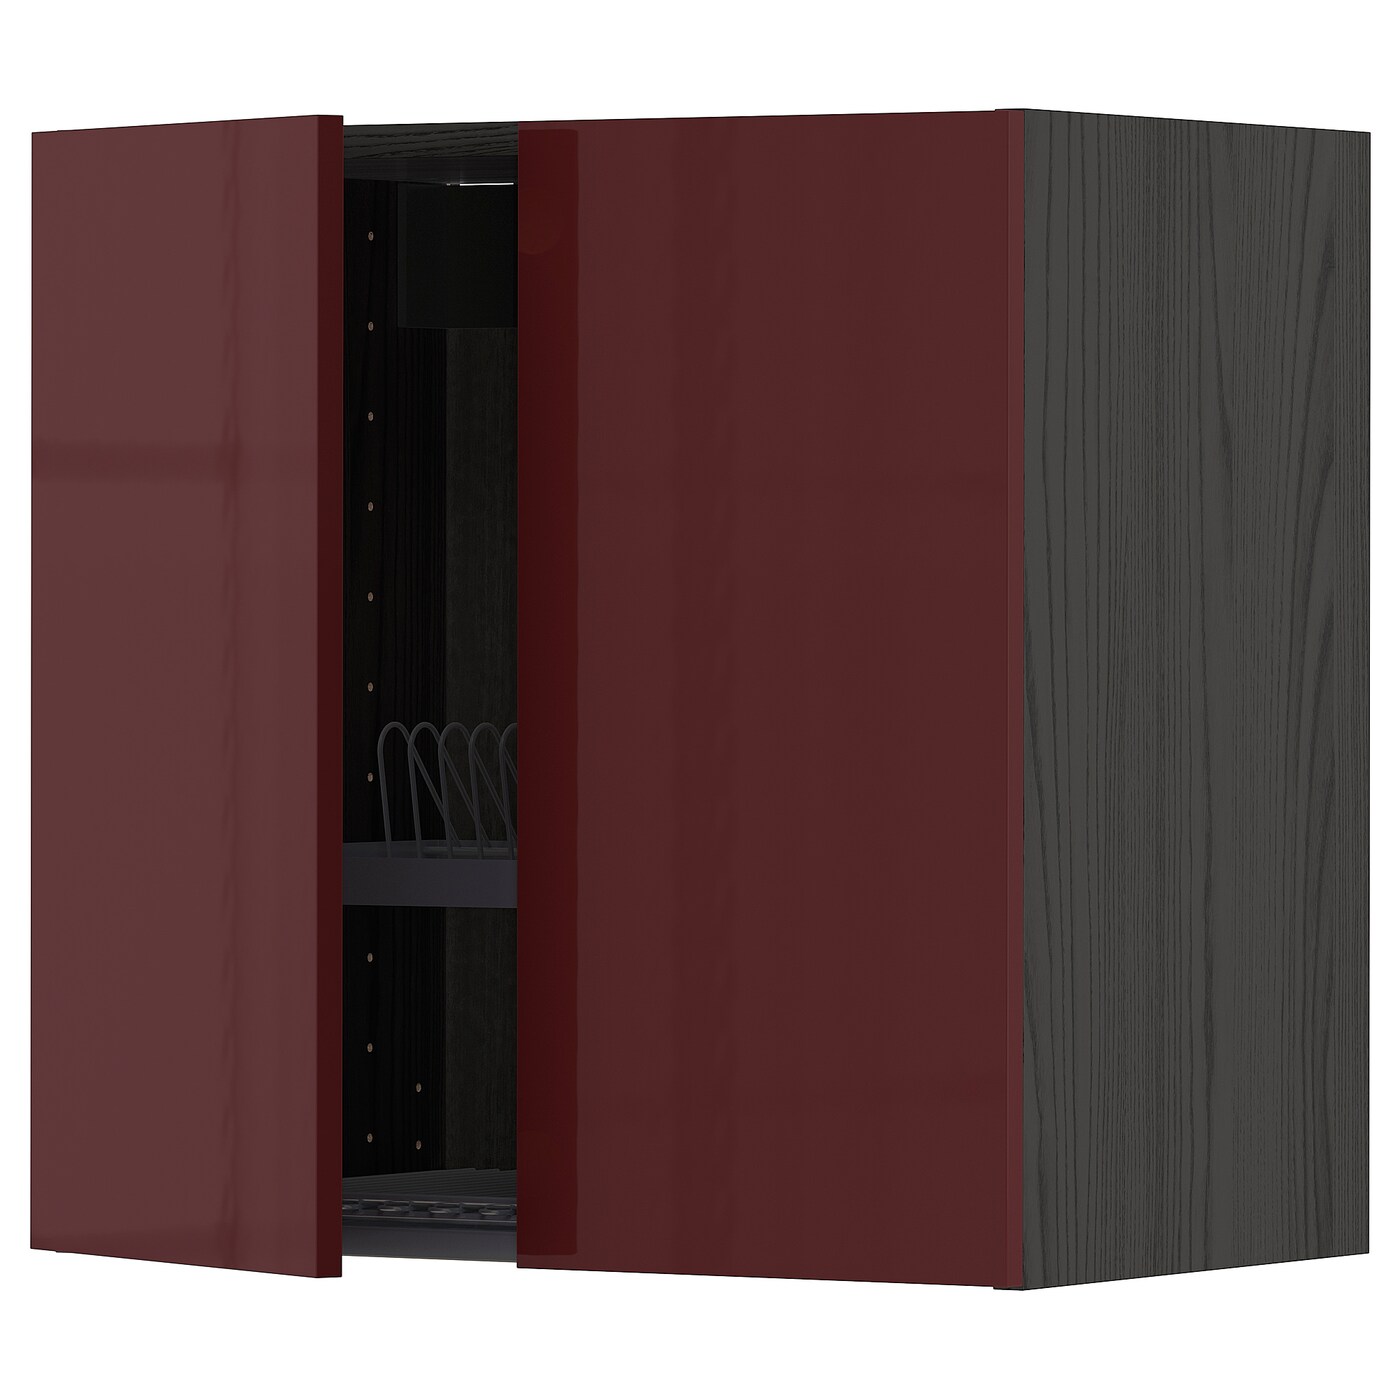 Навесной шкаф с сушилкой - METOD IKEA/ МЕТОД ИКЕА, 60х60 см, черный/красный